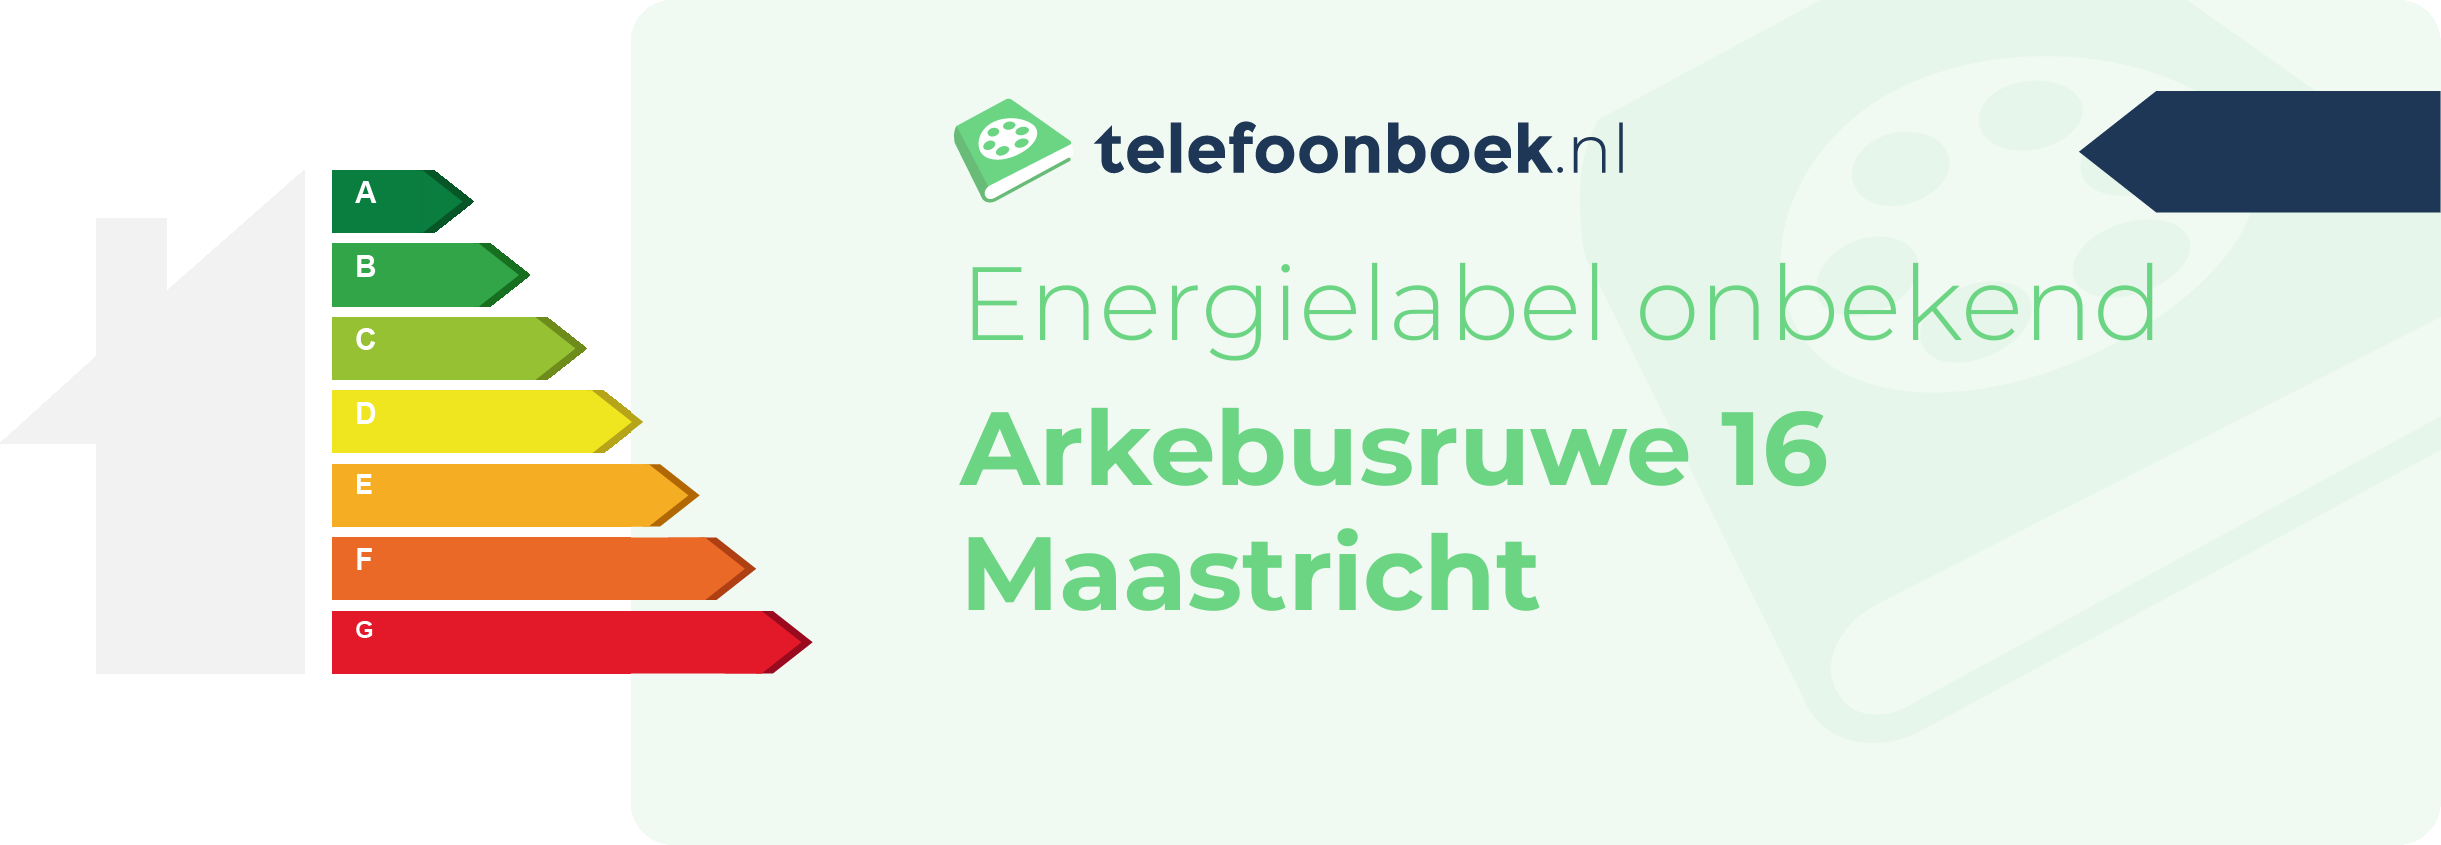 Energielabel Arkebusruwe 16 Maastricht